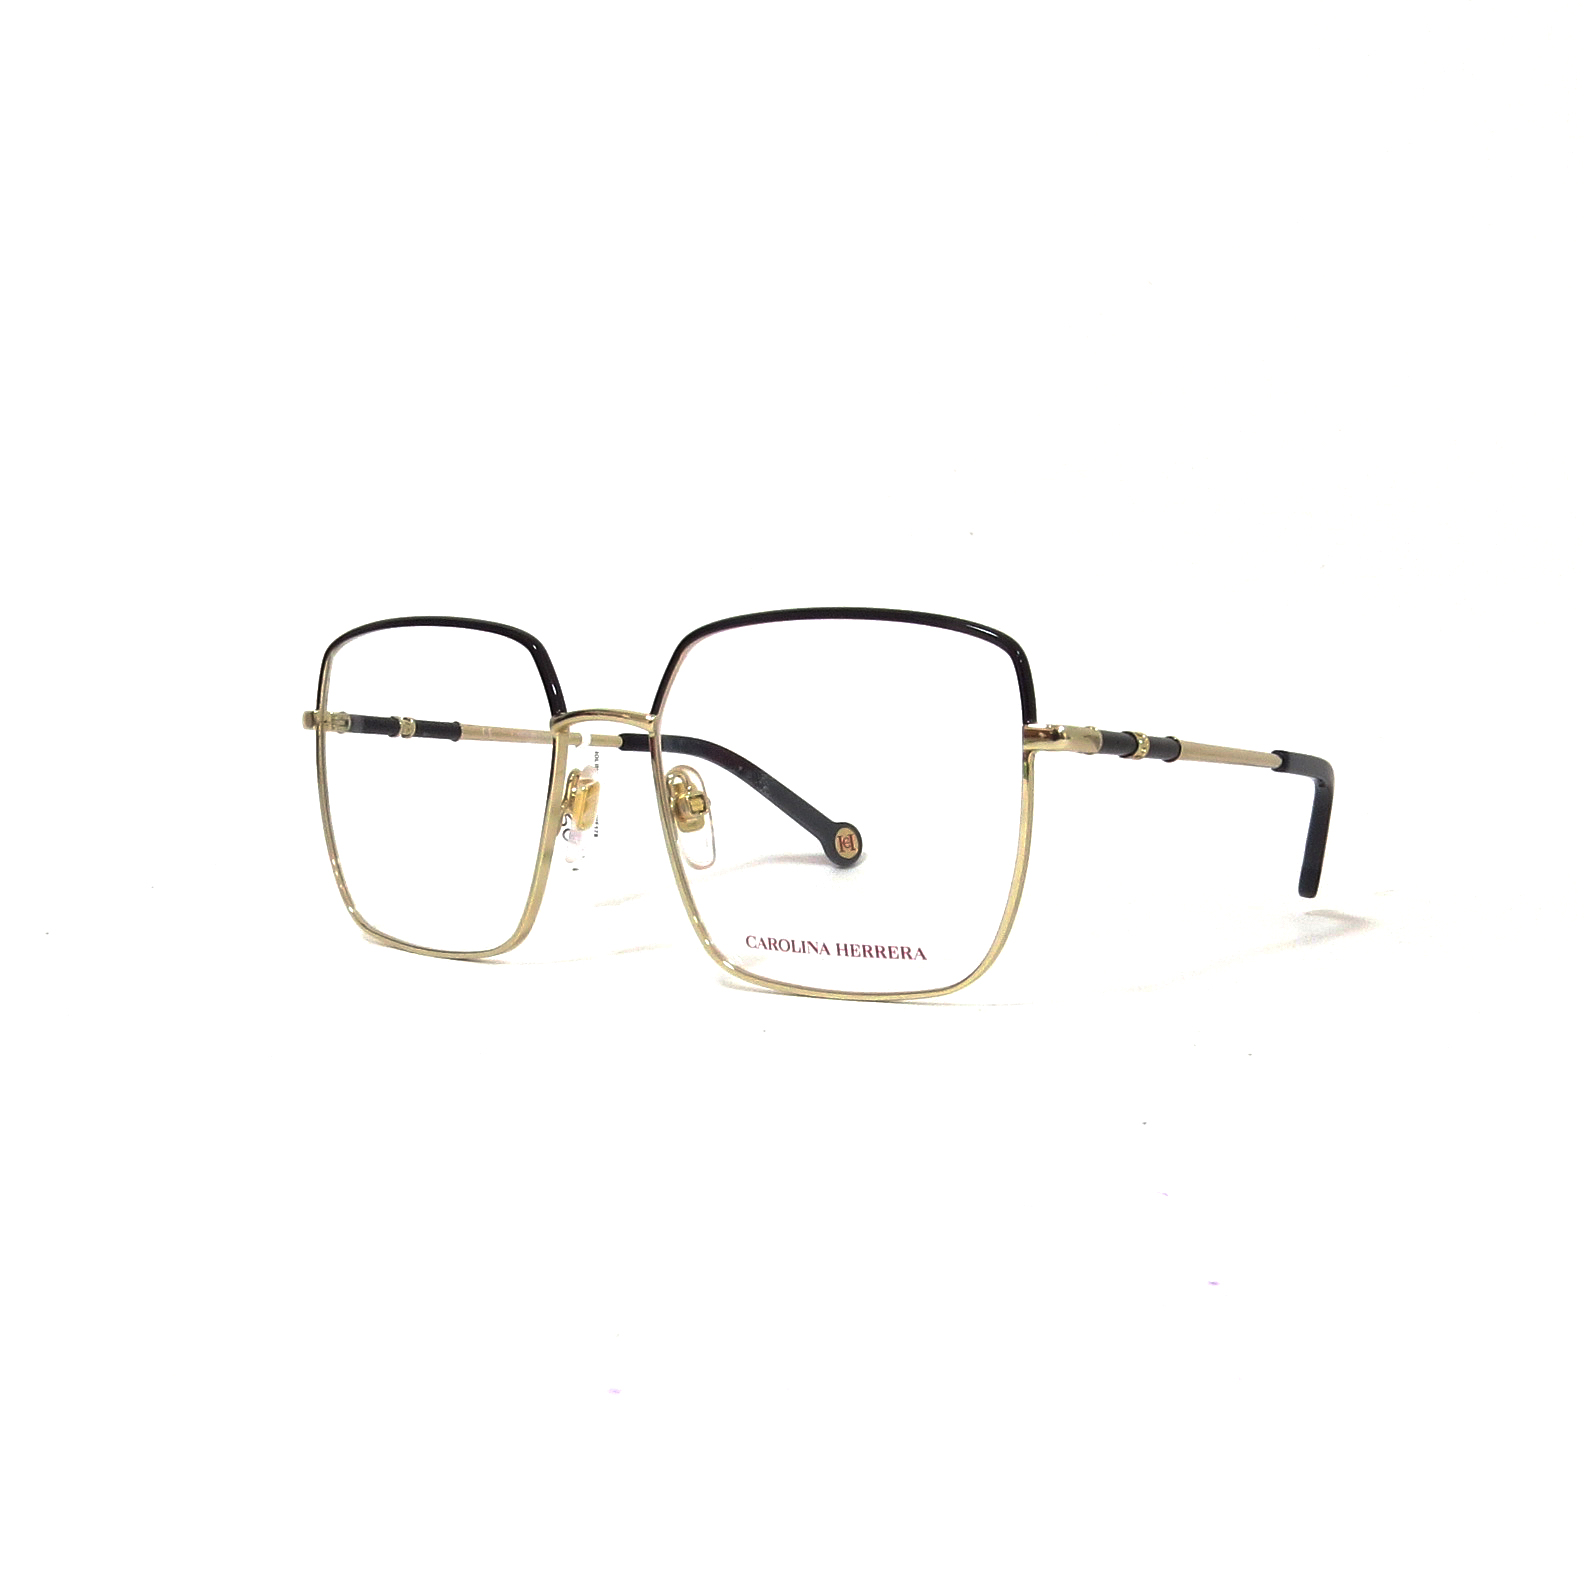 Caballo principal malicioso Óptica las gafas | CAROLINA HERRERA - VHE 178 - Óptica las gafas